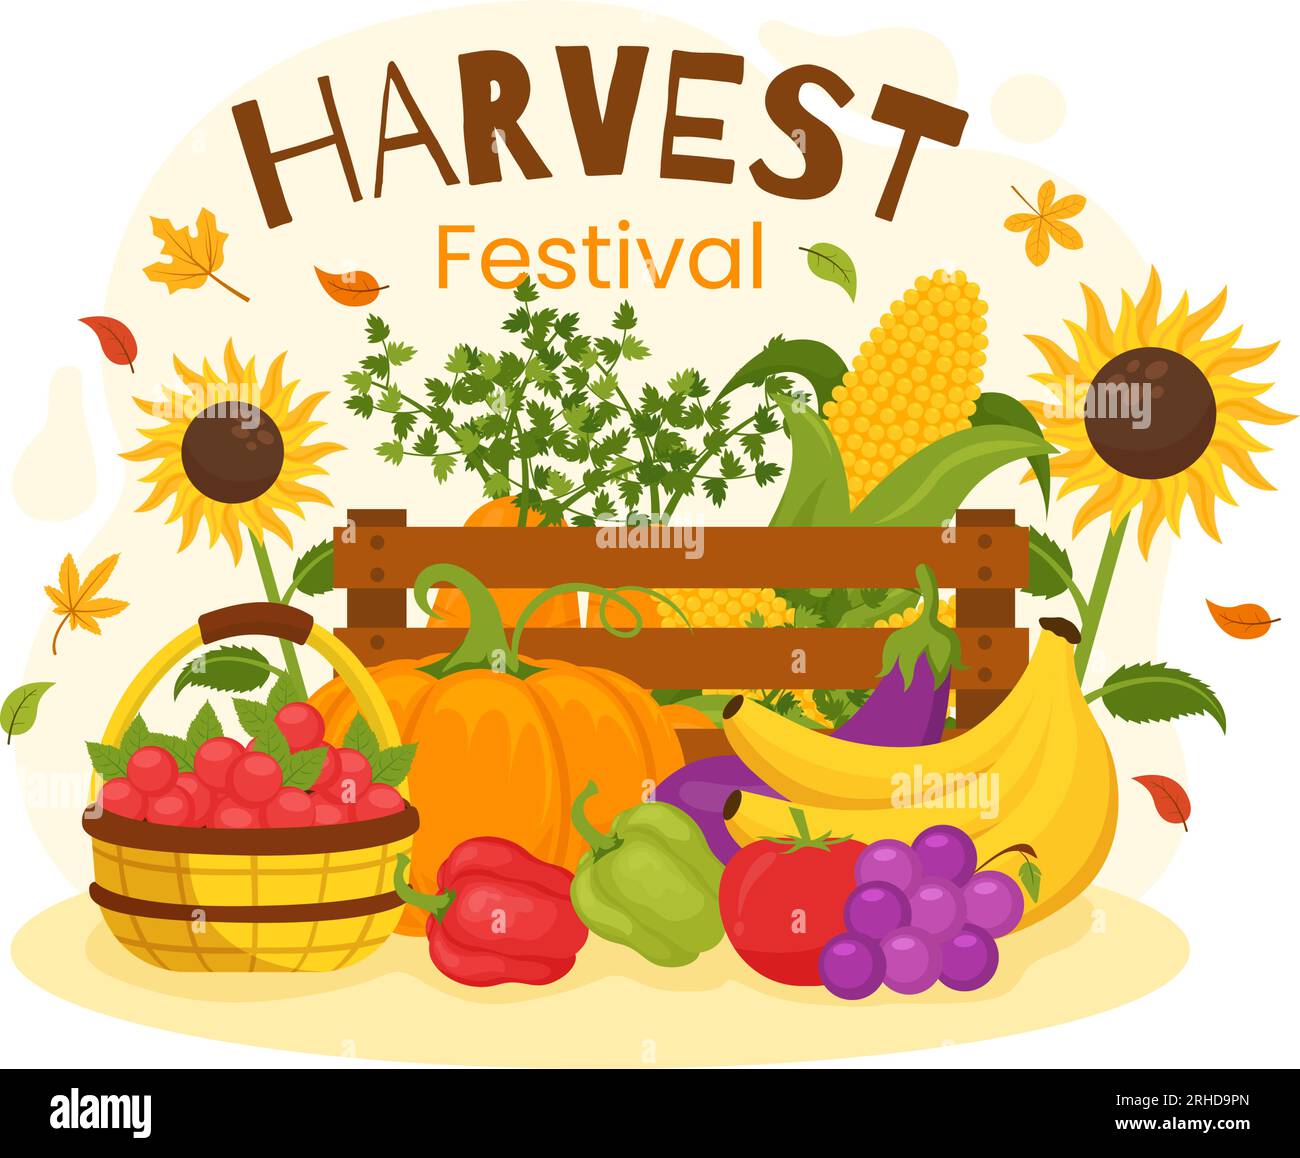 Illustration vectorielle du festival de récolte heureuse de fond de saison d'automne avec des citrouilles, des feuilles d'érable, des fruits ou des légumes dans des modèles plats de dessin animé Illustration de Vecteur